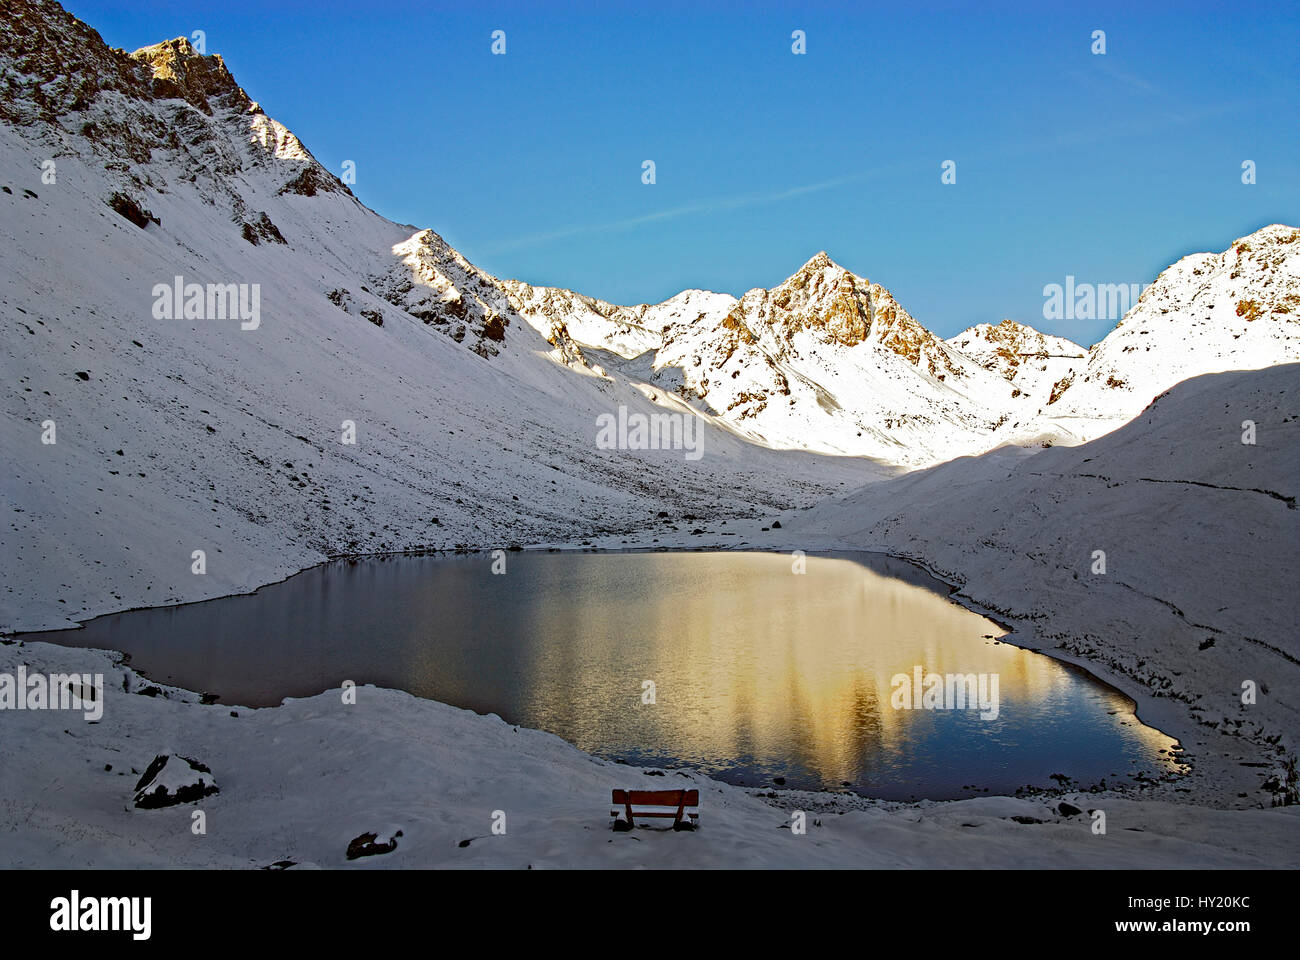 Ce stock photo montre le petit lac de montagne Ã"lplisee près du village de montagne d'une station de ski d'Arosa en Suisse. Arosa est entouré de mountain vues Banque D'Images